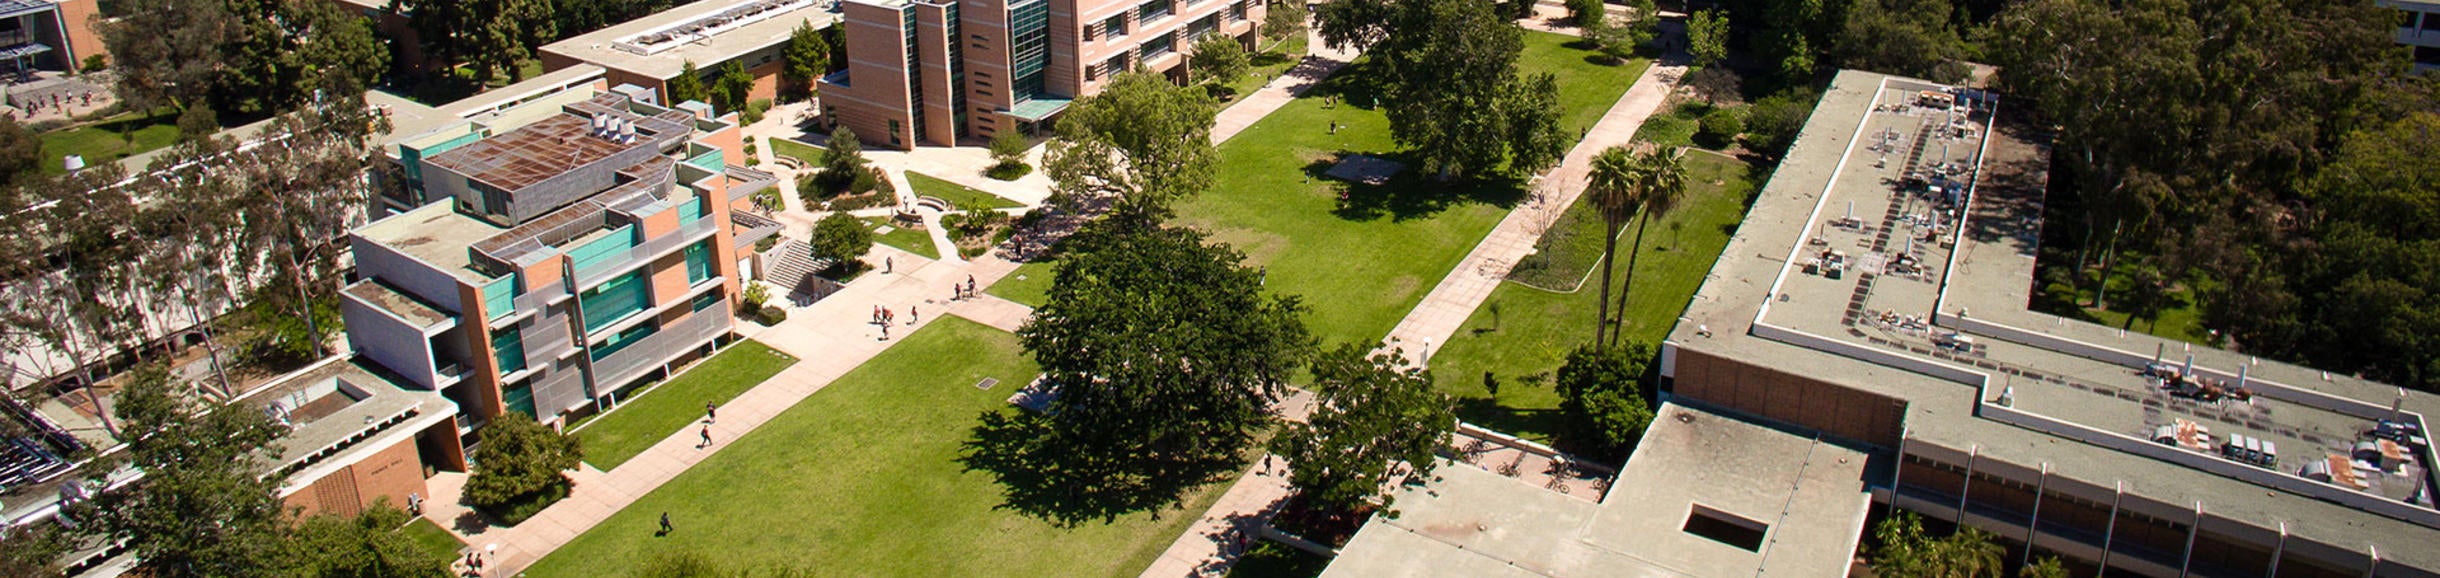 Aerial Picture of UCR campus